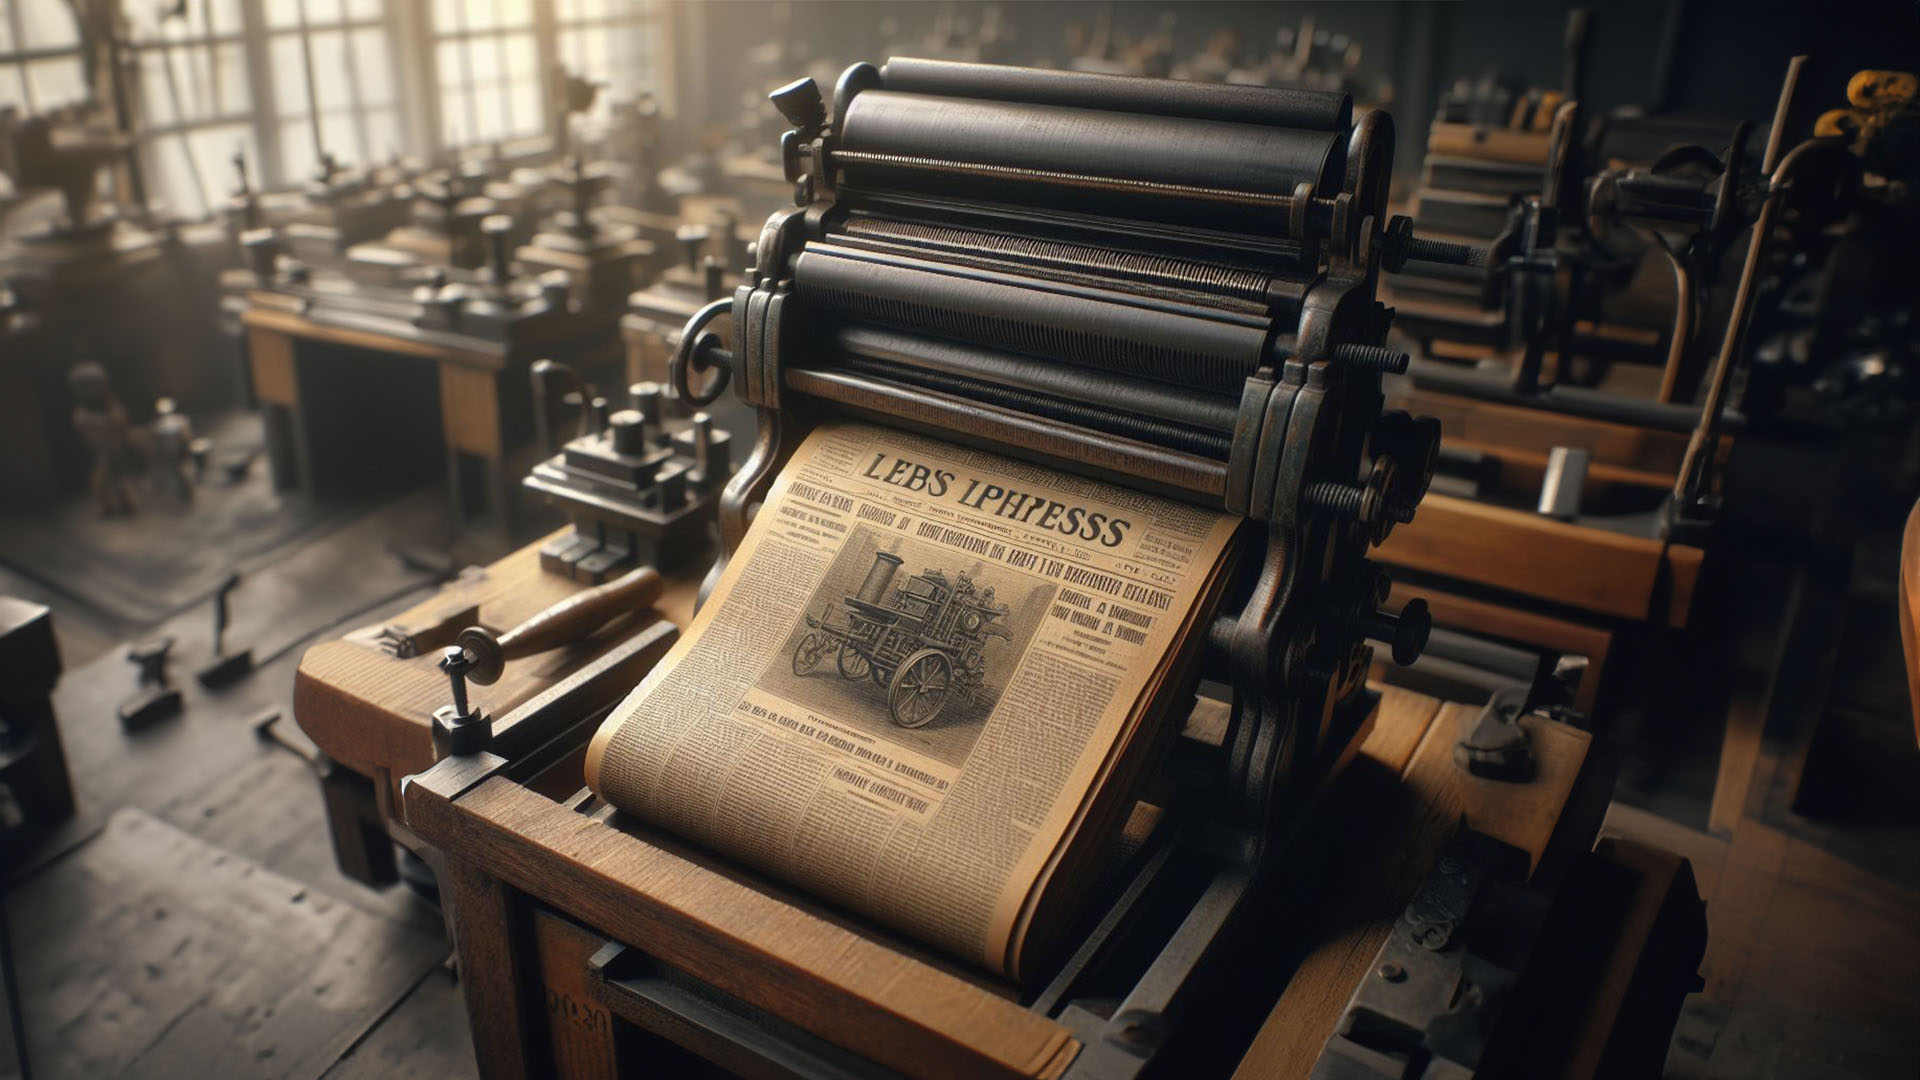 letterpress